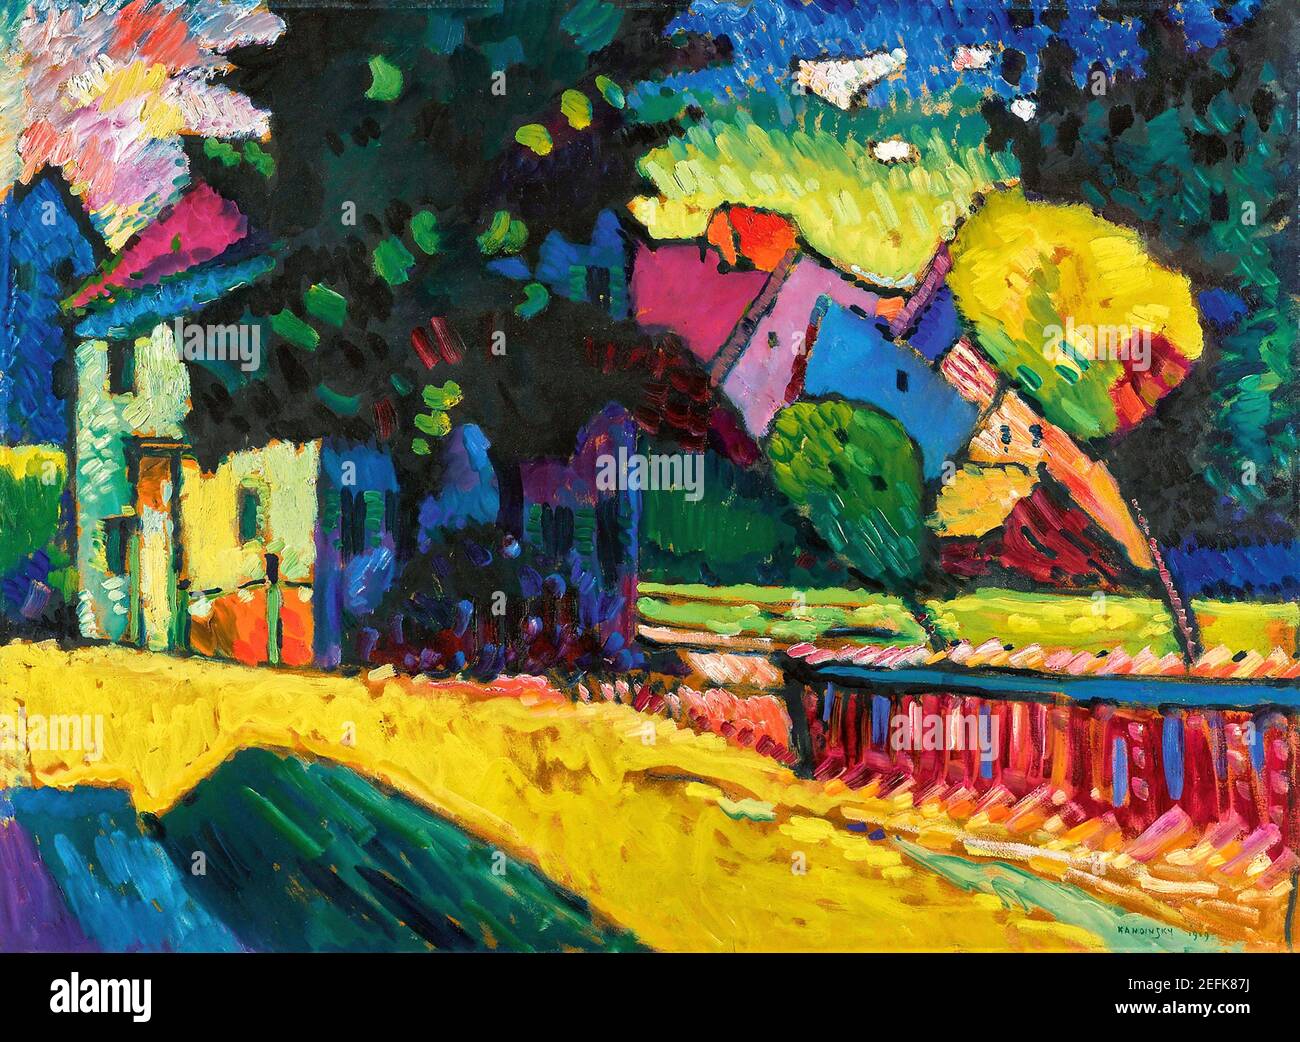 Peinture Kandinsky. 'Murnau - Paysage avec Maison verte' par Wassily Kandinsky (1866-1944), huile sur carton, 1909 Banque D'Images